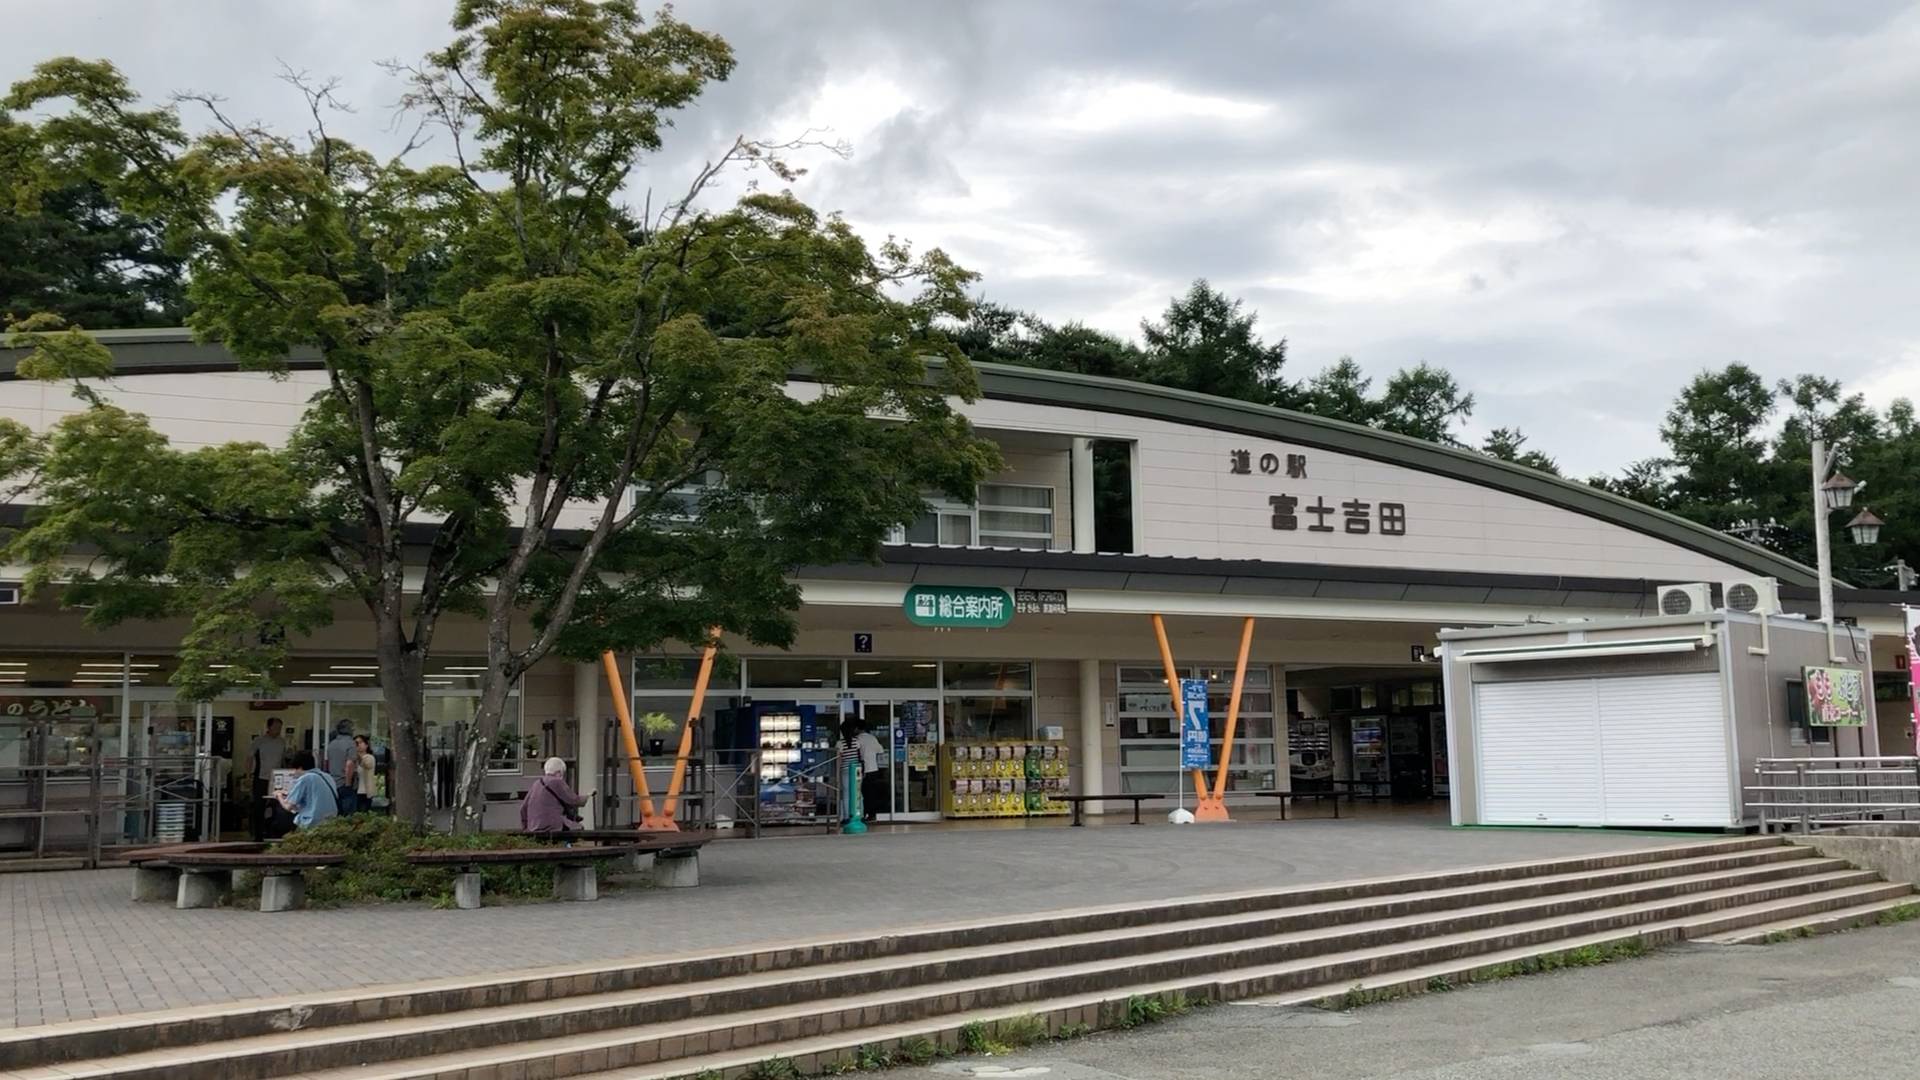 【軽バン車中泊6】とある理由により道の駅富士吉田から八ヶ岳PAに車中泊場所を変更